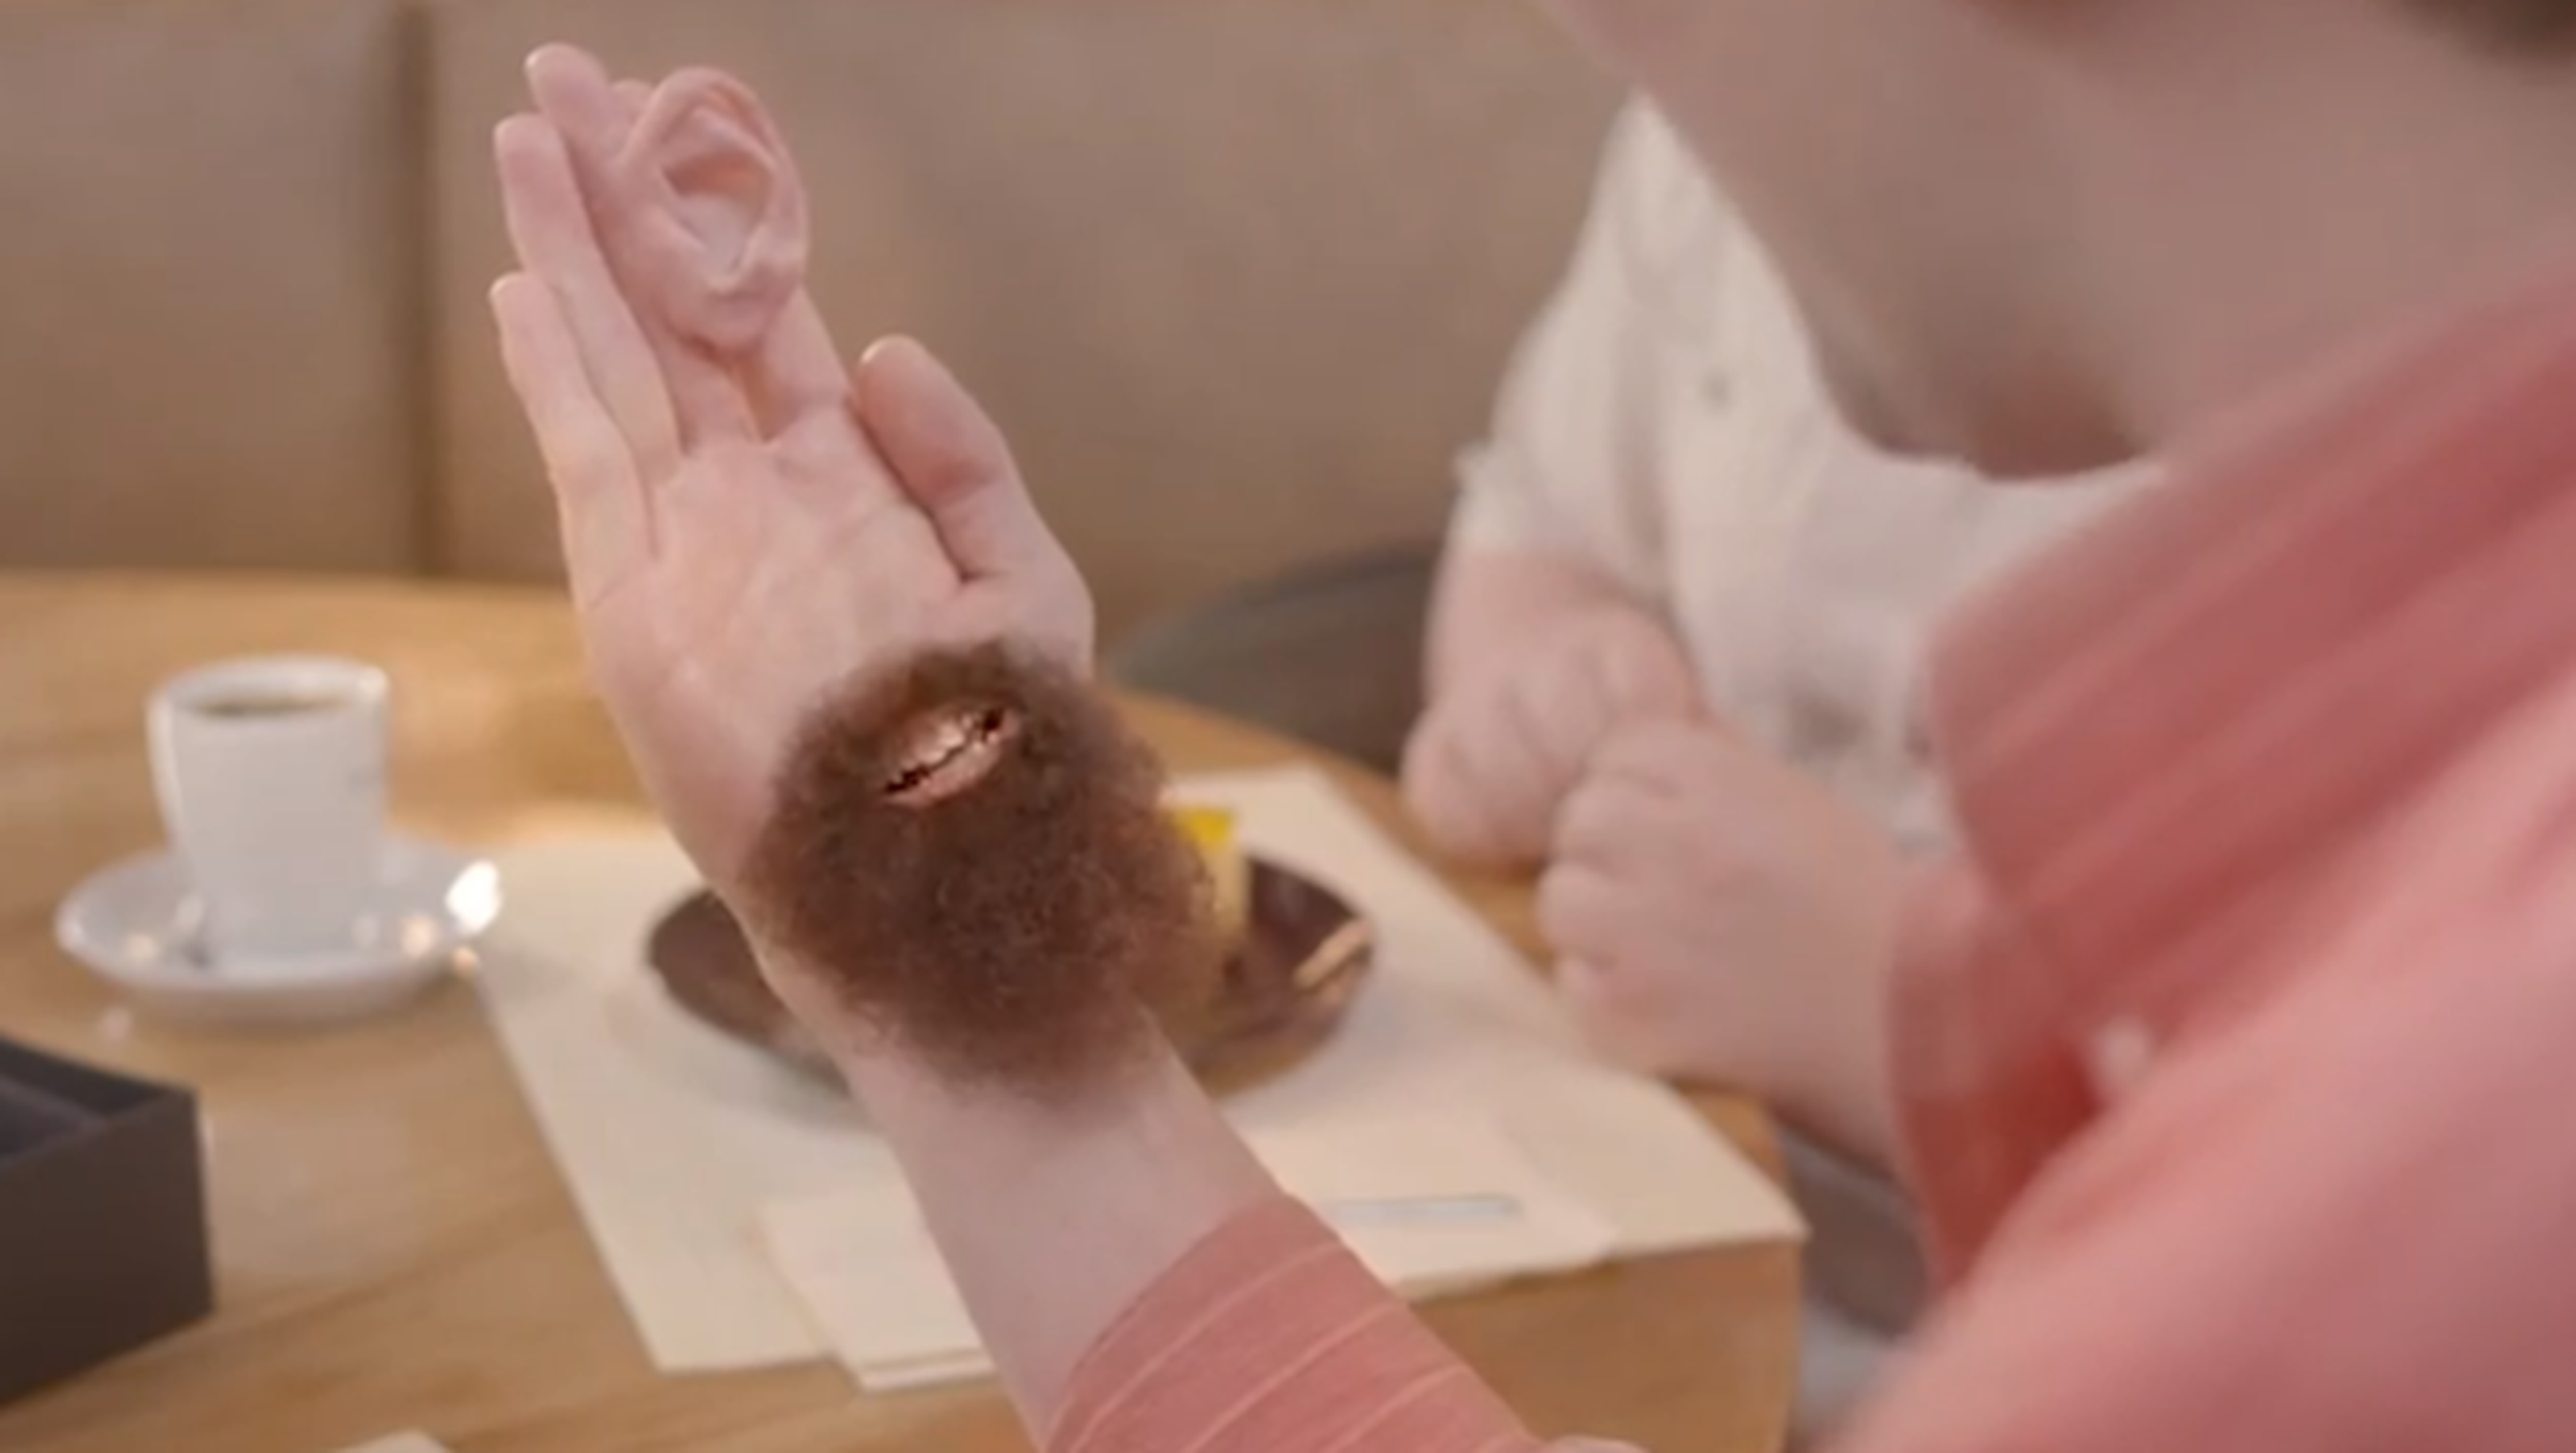 LG G Flex anunciado en un vídeo de lo más extraño y absurdo